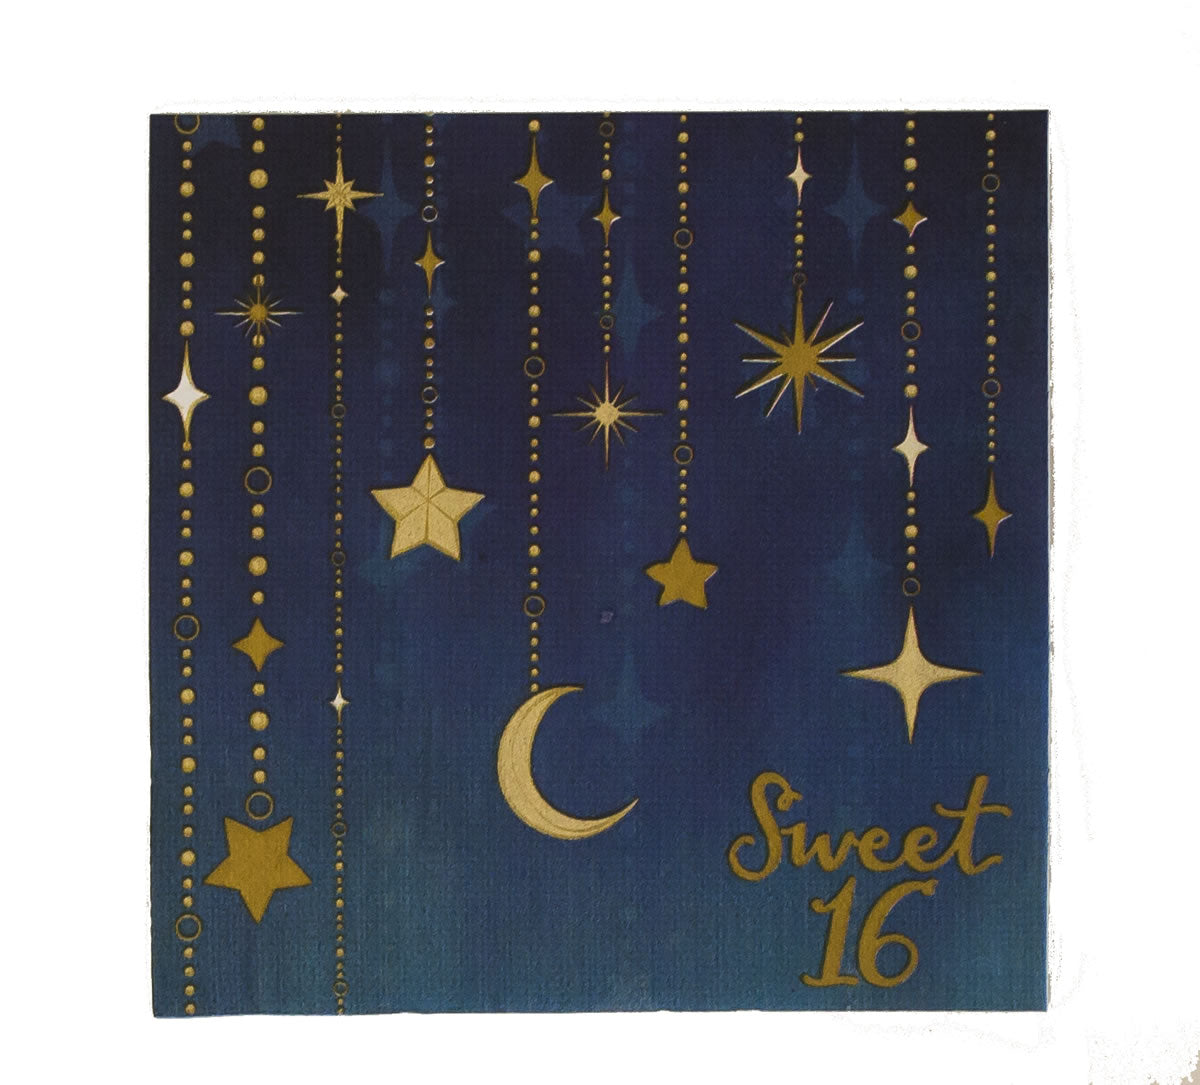 Starry Night Sweet 16 Luncheon Napkin 16ct | Milestone Birthday